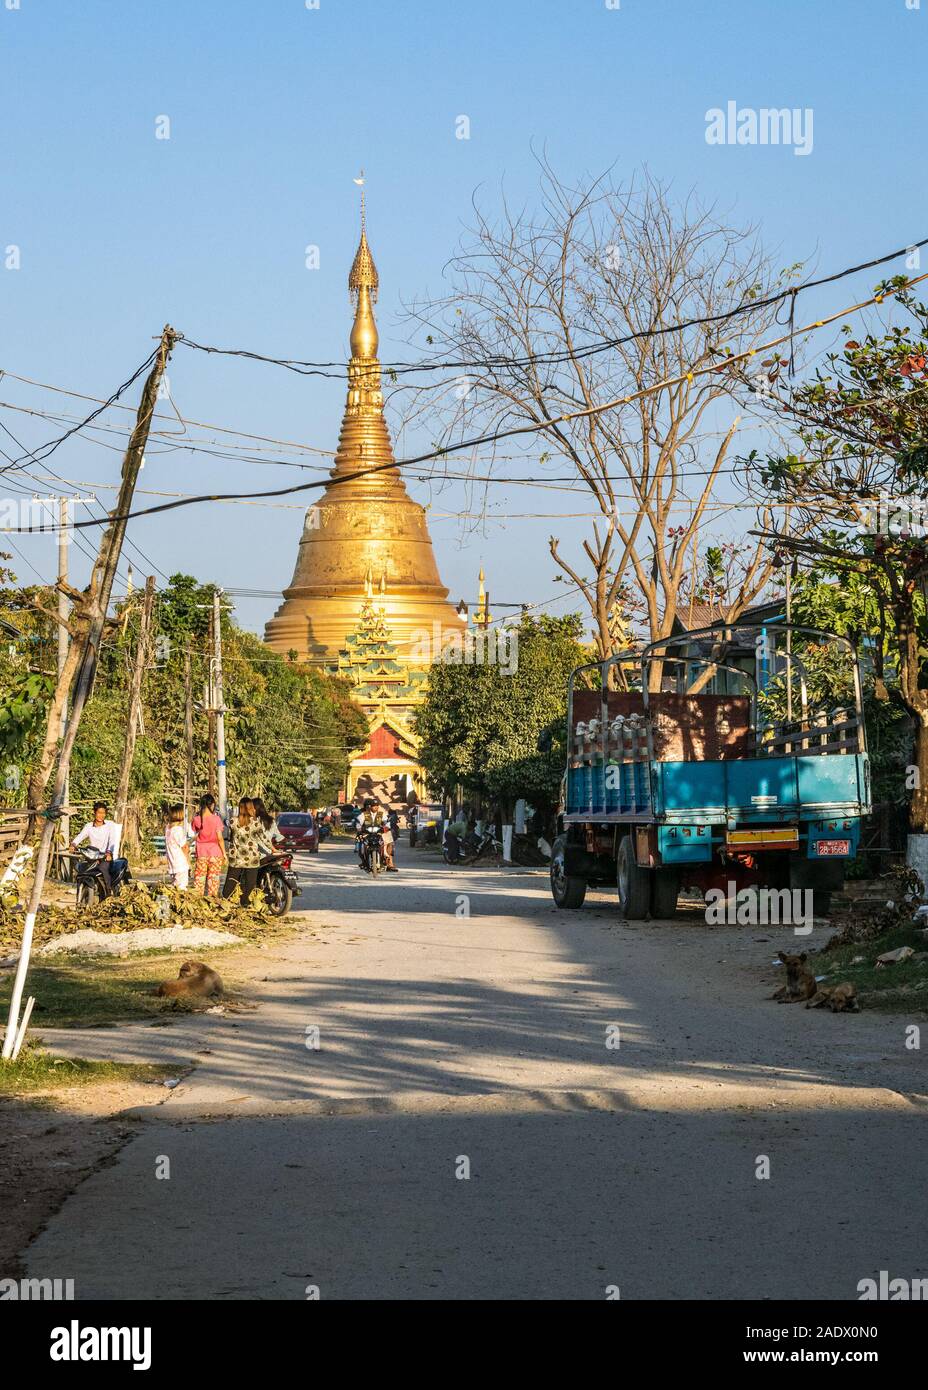 La popolazione locale in corso circa la loro vita quotidiana in una piccola città birmana di Taungoo, Myanmar con la famosa pagoda Swesandaw in background. Foto Stock